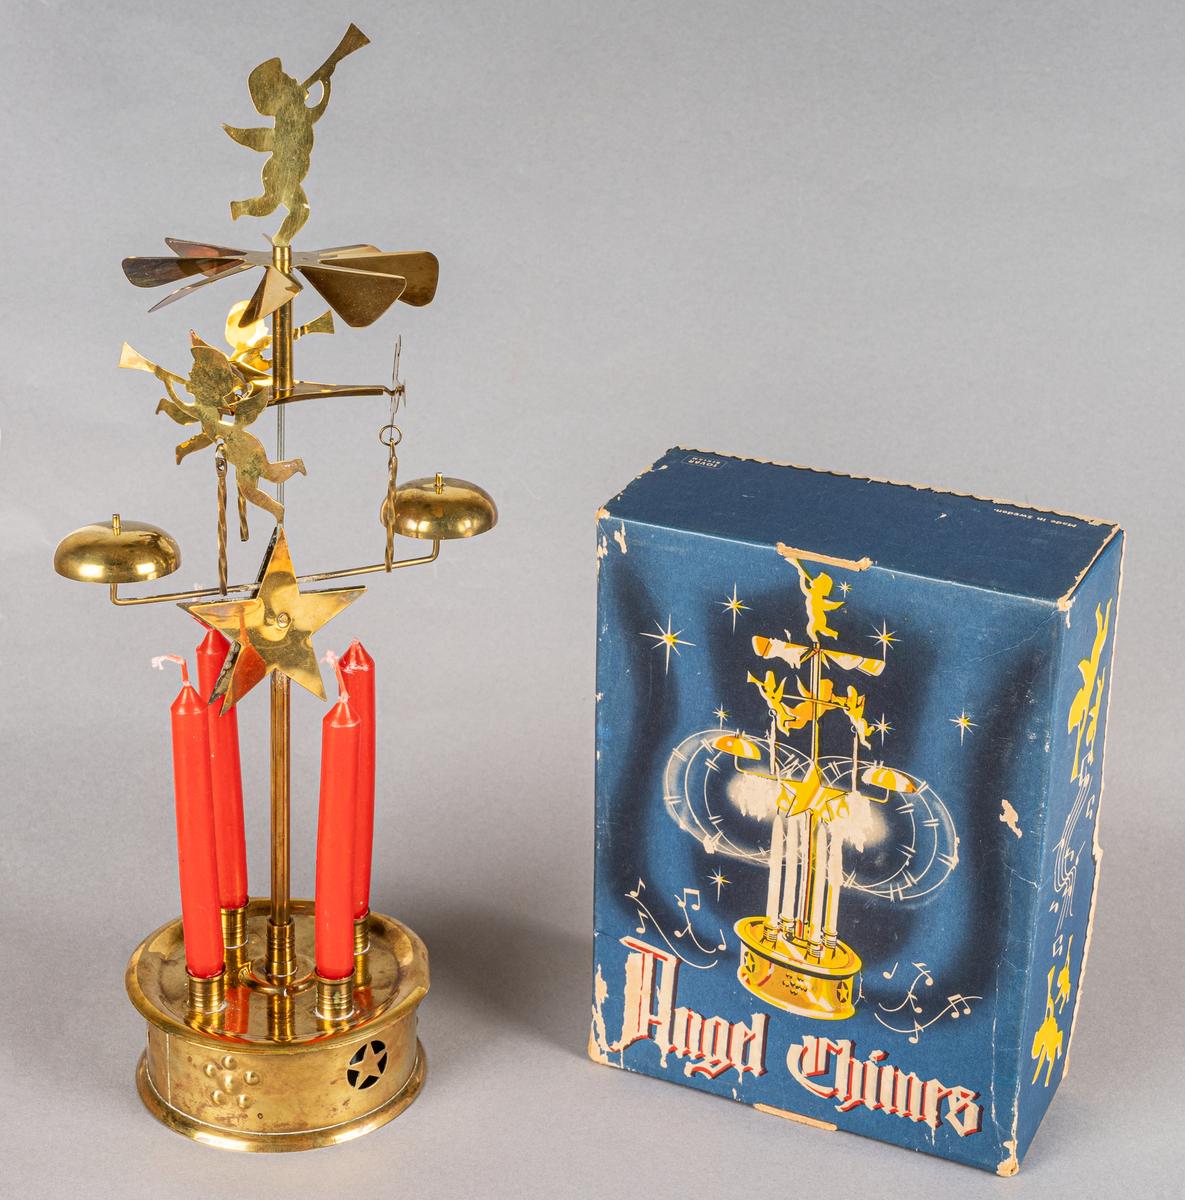 Änglaspel i mässing, med fyra tillhörande röda stearinljus samt en blå originalkartong. Spelet har tre snurrande änglar och en som roterar som sätts i rörelse när stearinljusen är tända och slår an mot två små klockor, varvid ett "spelande" ljud uppstår.